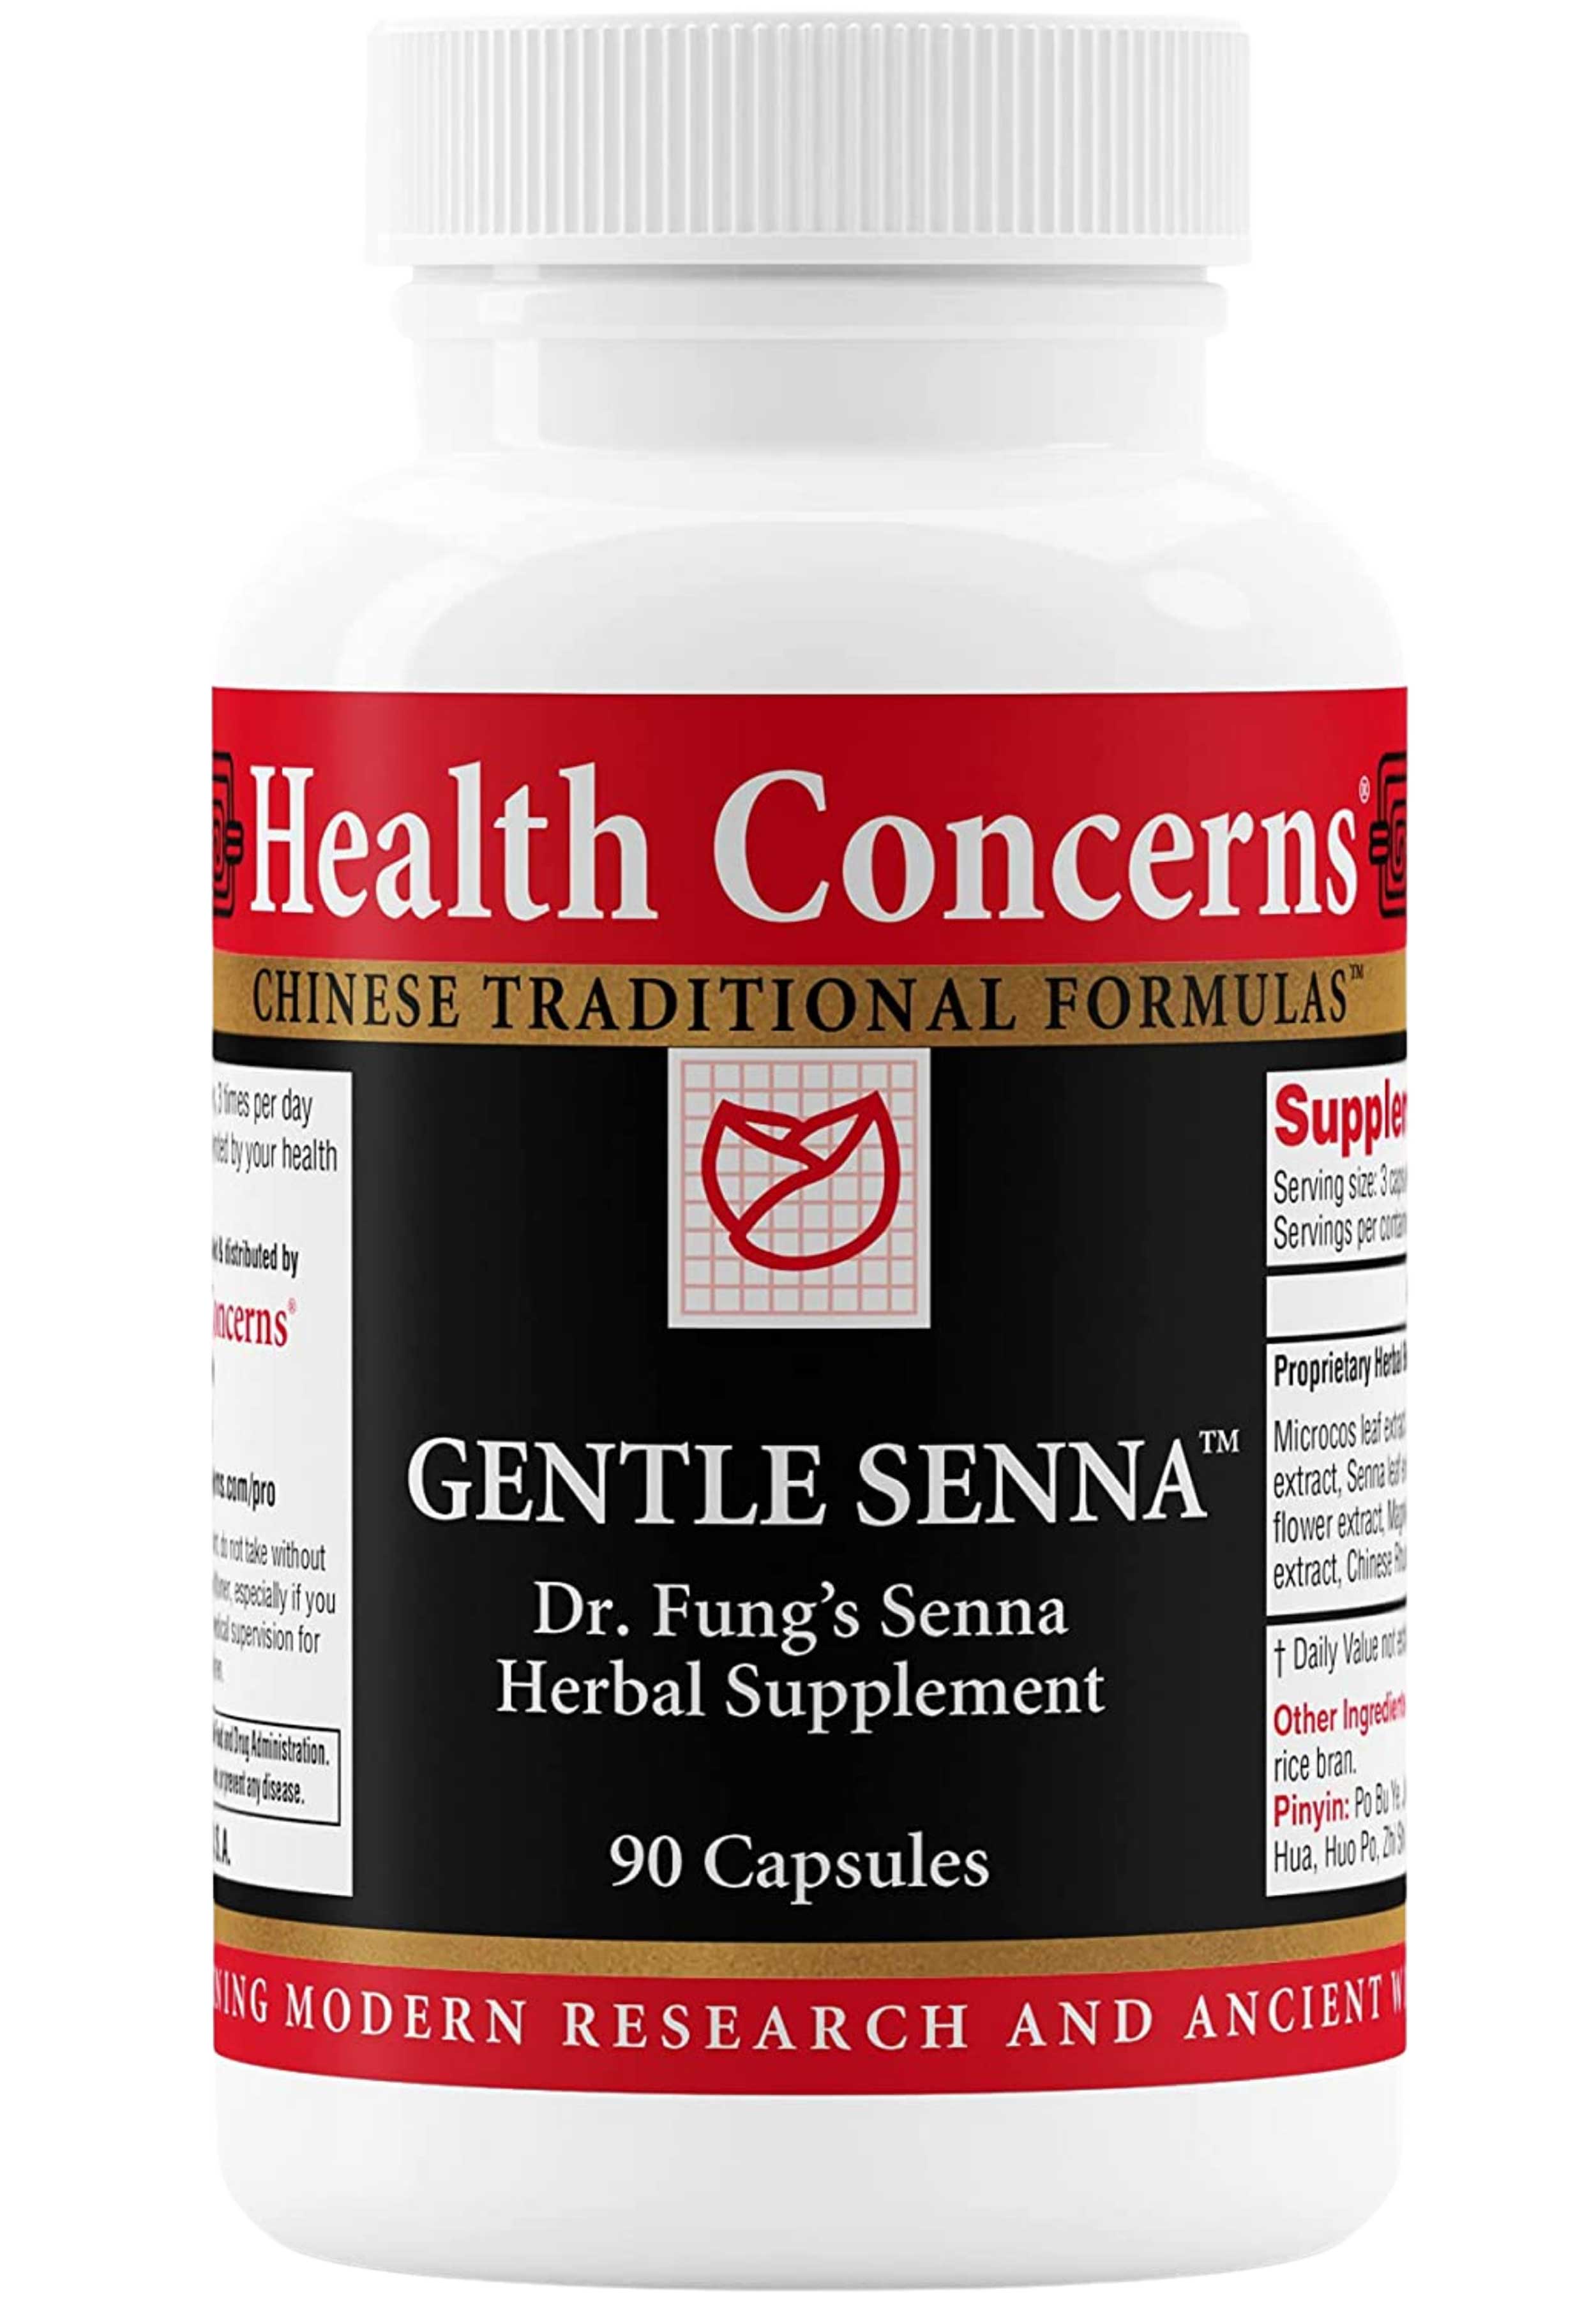 Health Concerns Gentle Senna